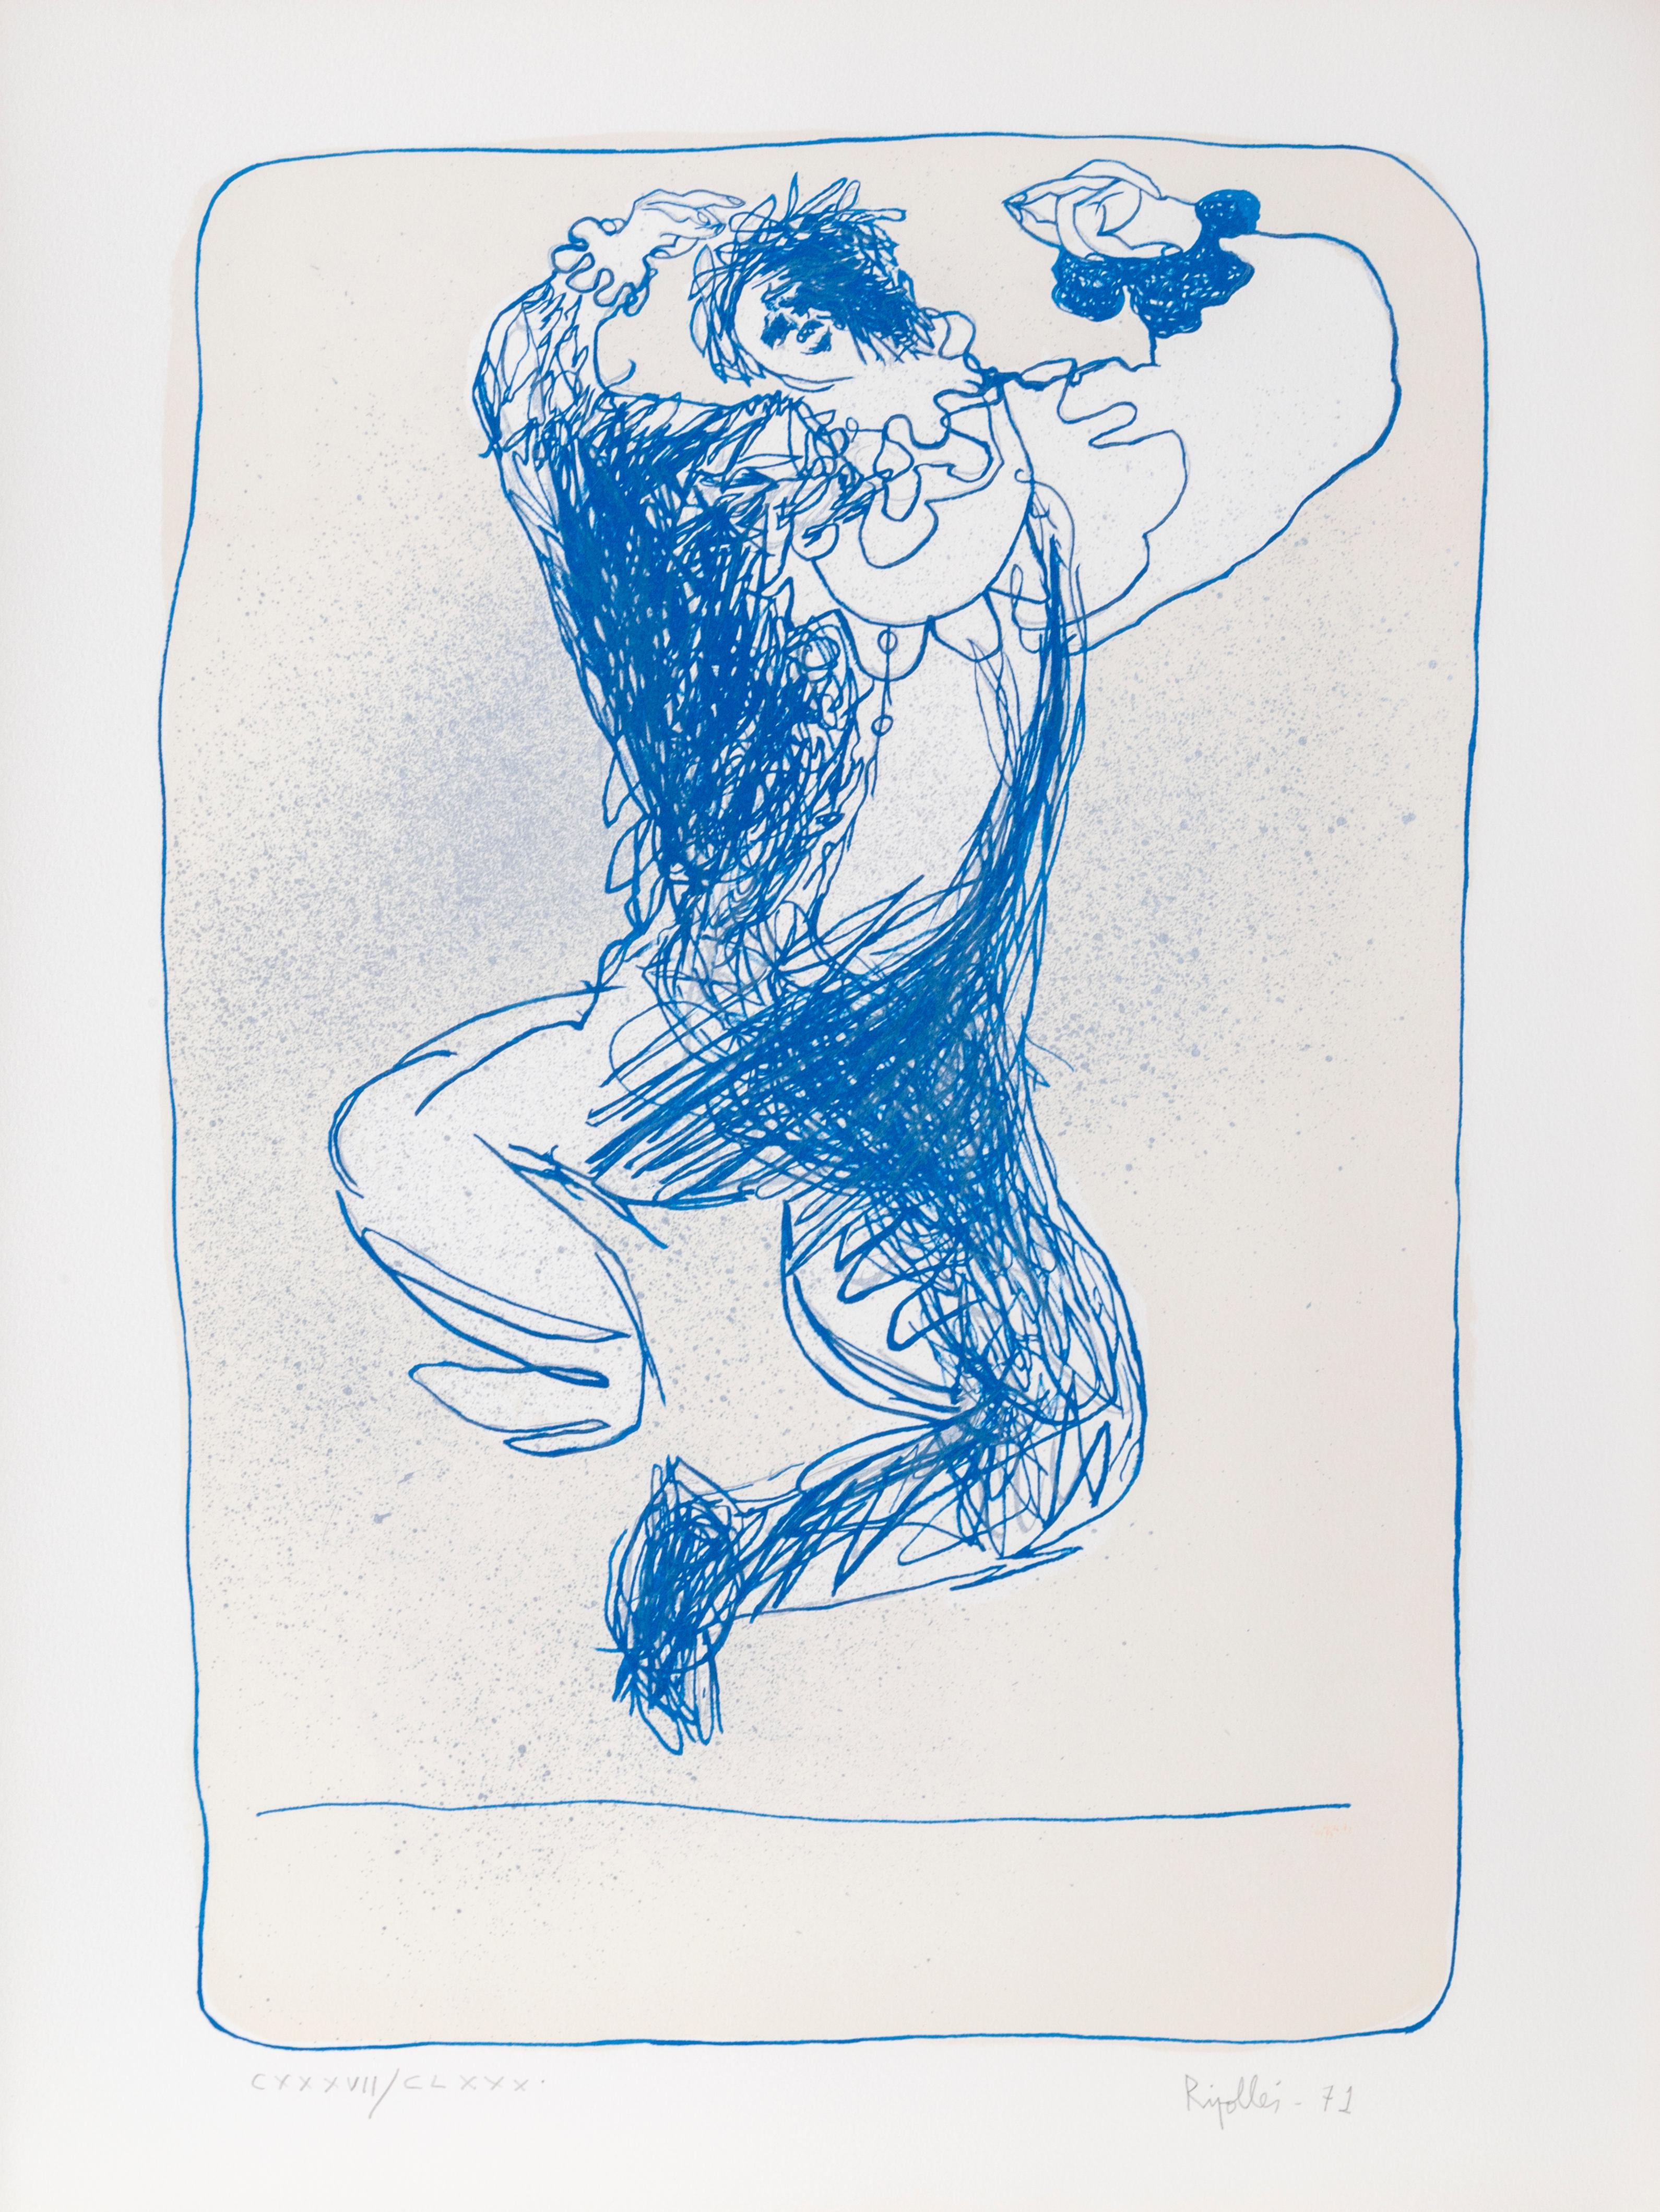 Artiste : Juan Garcia Ripolles (1932 - )
Titre : Harlequin Leaping
Date : 1971
Médium : Lithographie, signée et numérotée au crayon
Edition de l'A.E. XX (20)
Taille : 64,77 cm x 48,26 cm (25,5 in. x 19 in.)